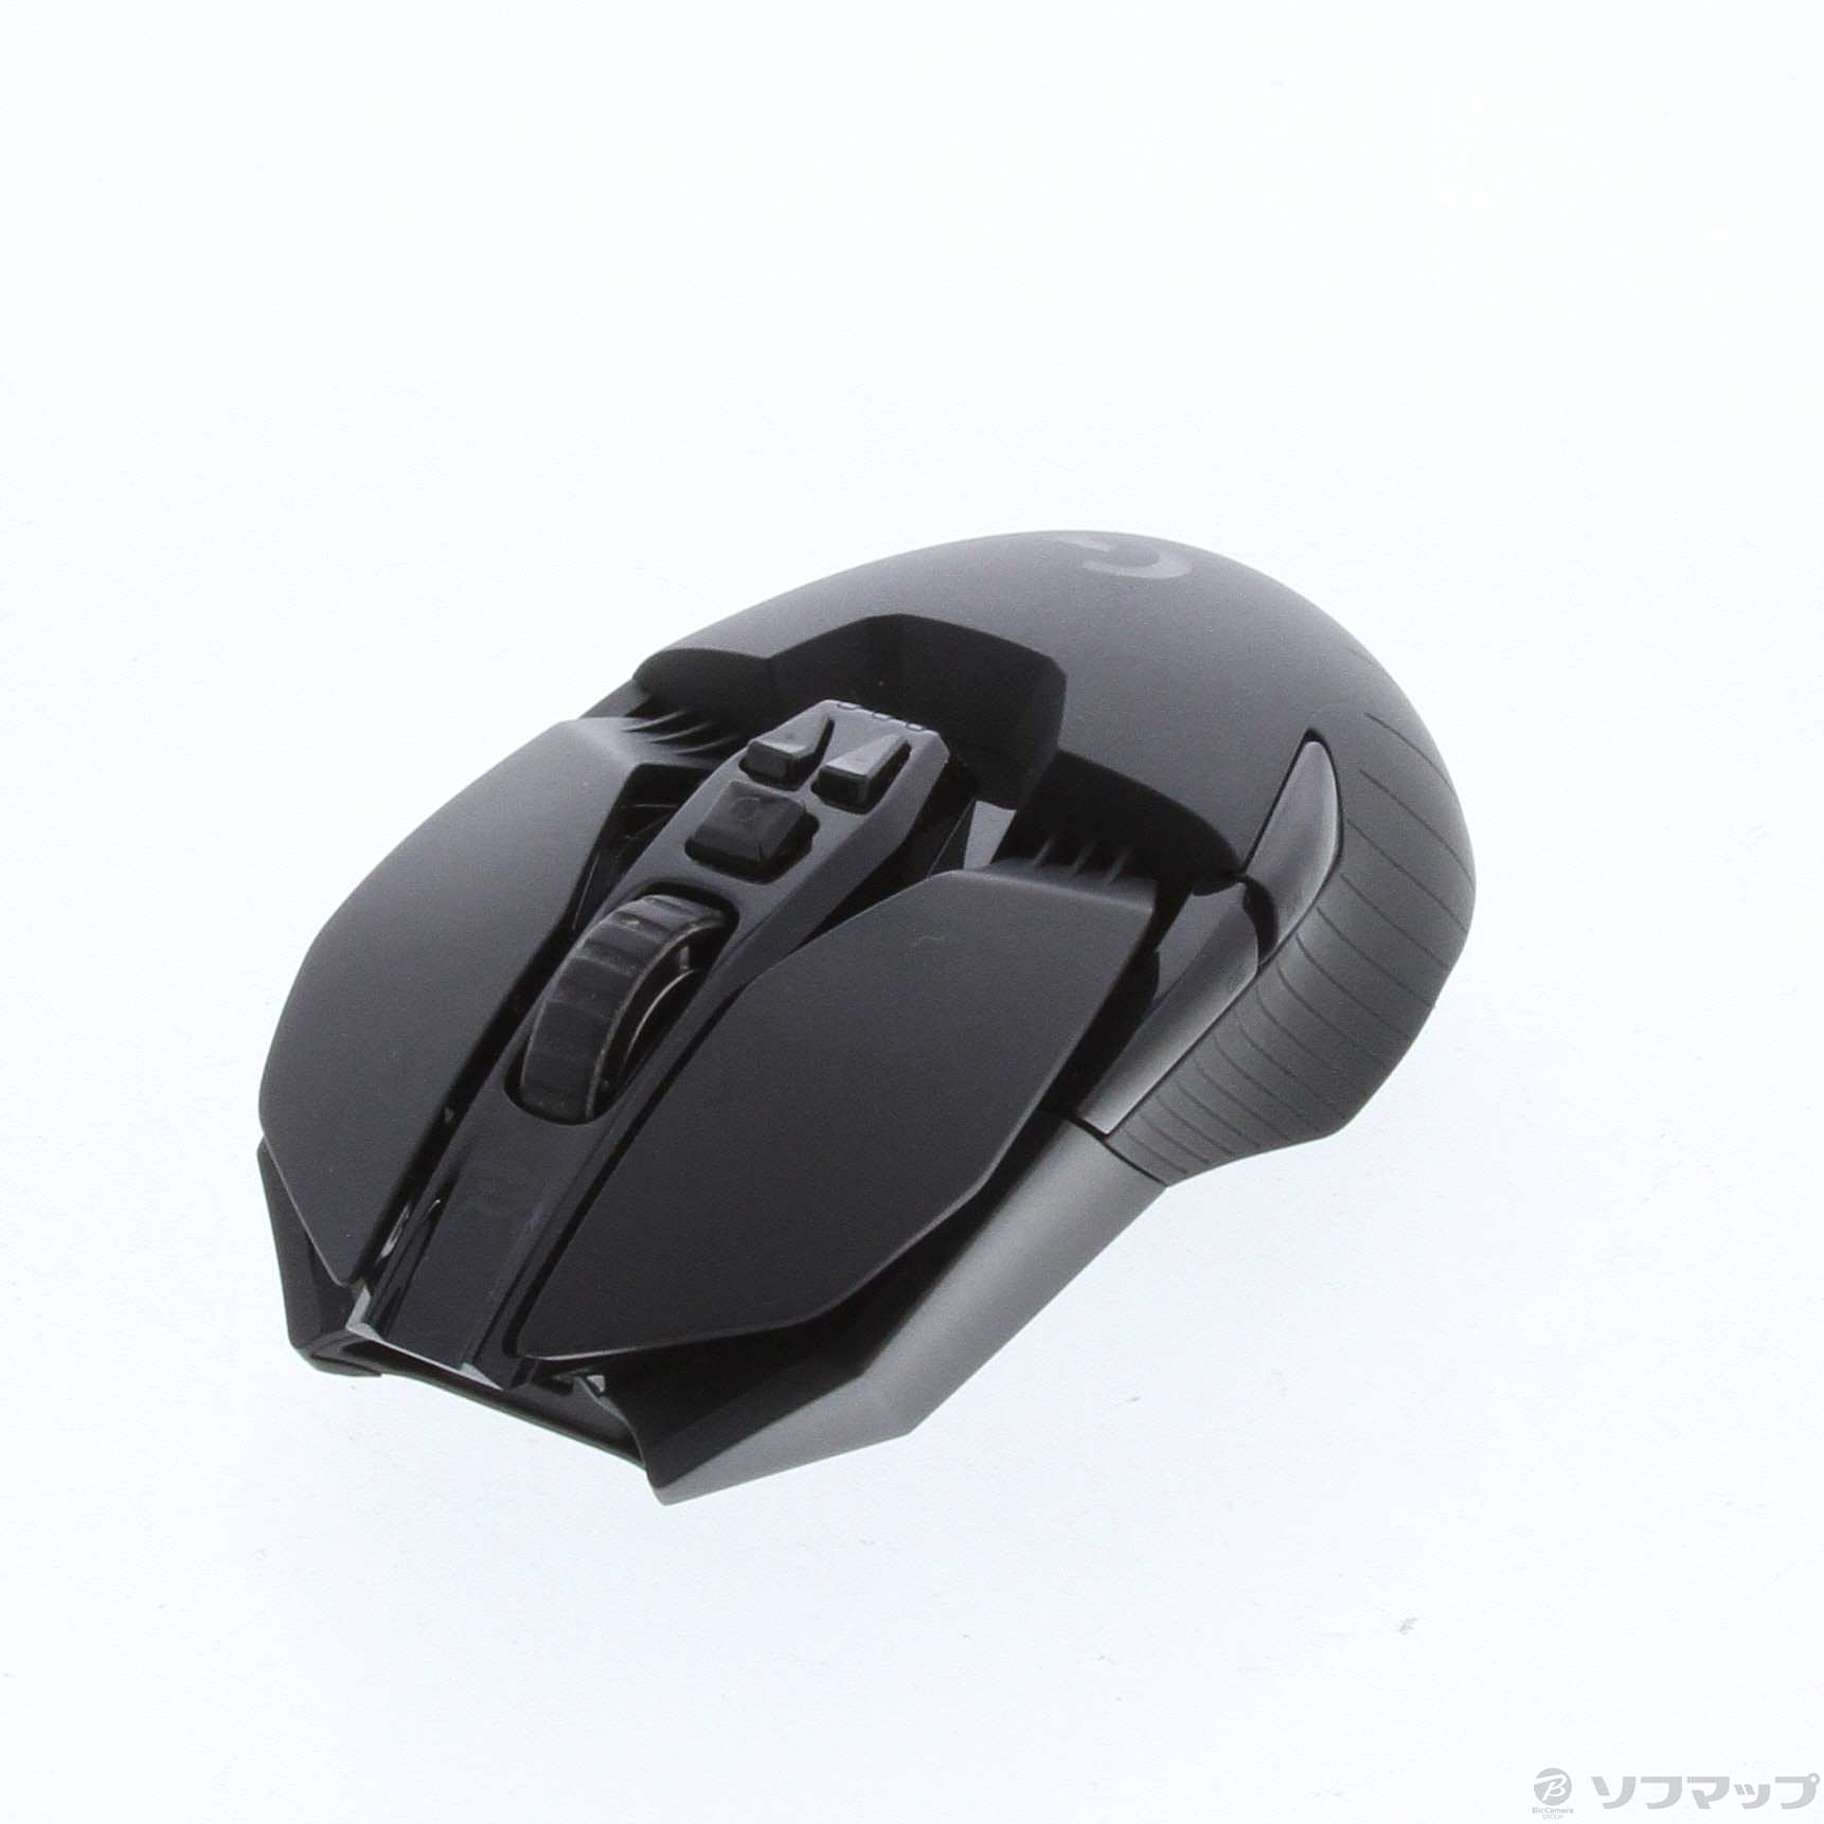 中古】ロジクール G903 LIGHTSPEED ワイヤレス ゲーミング マウス ...